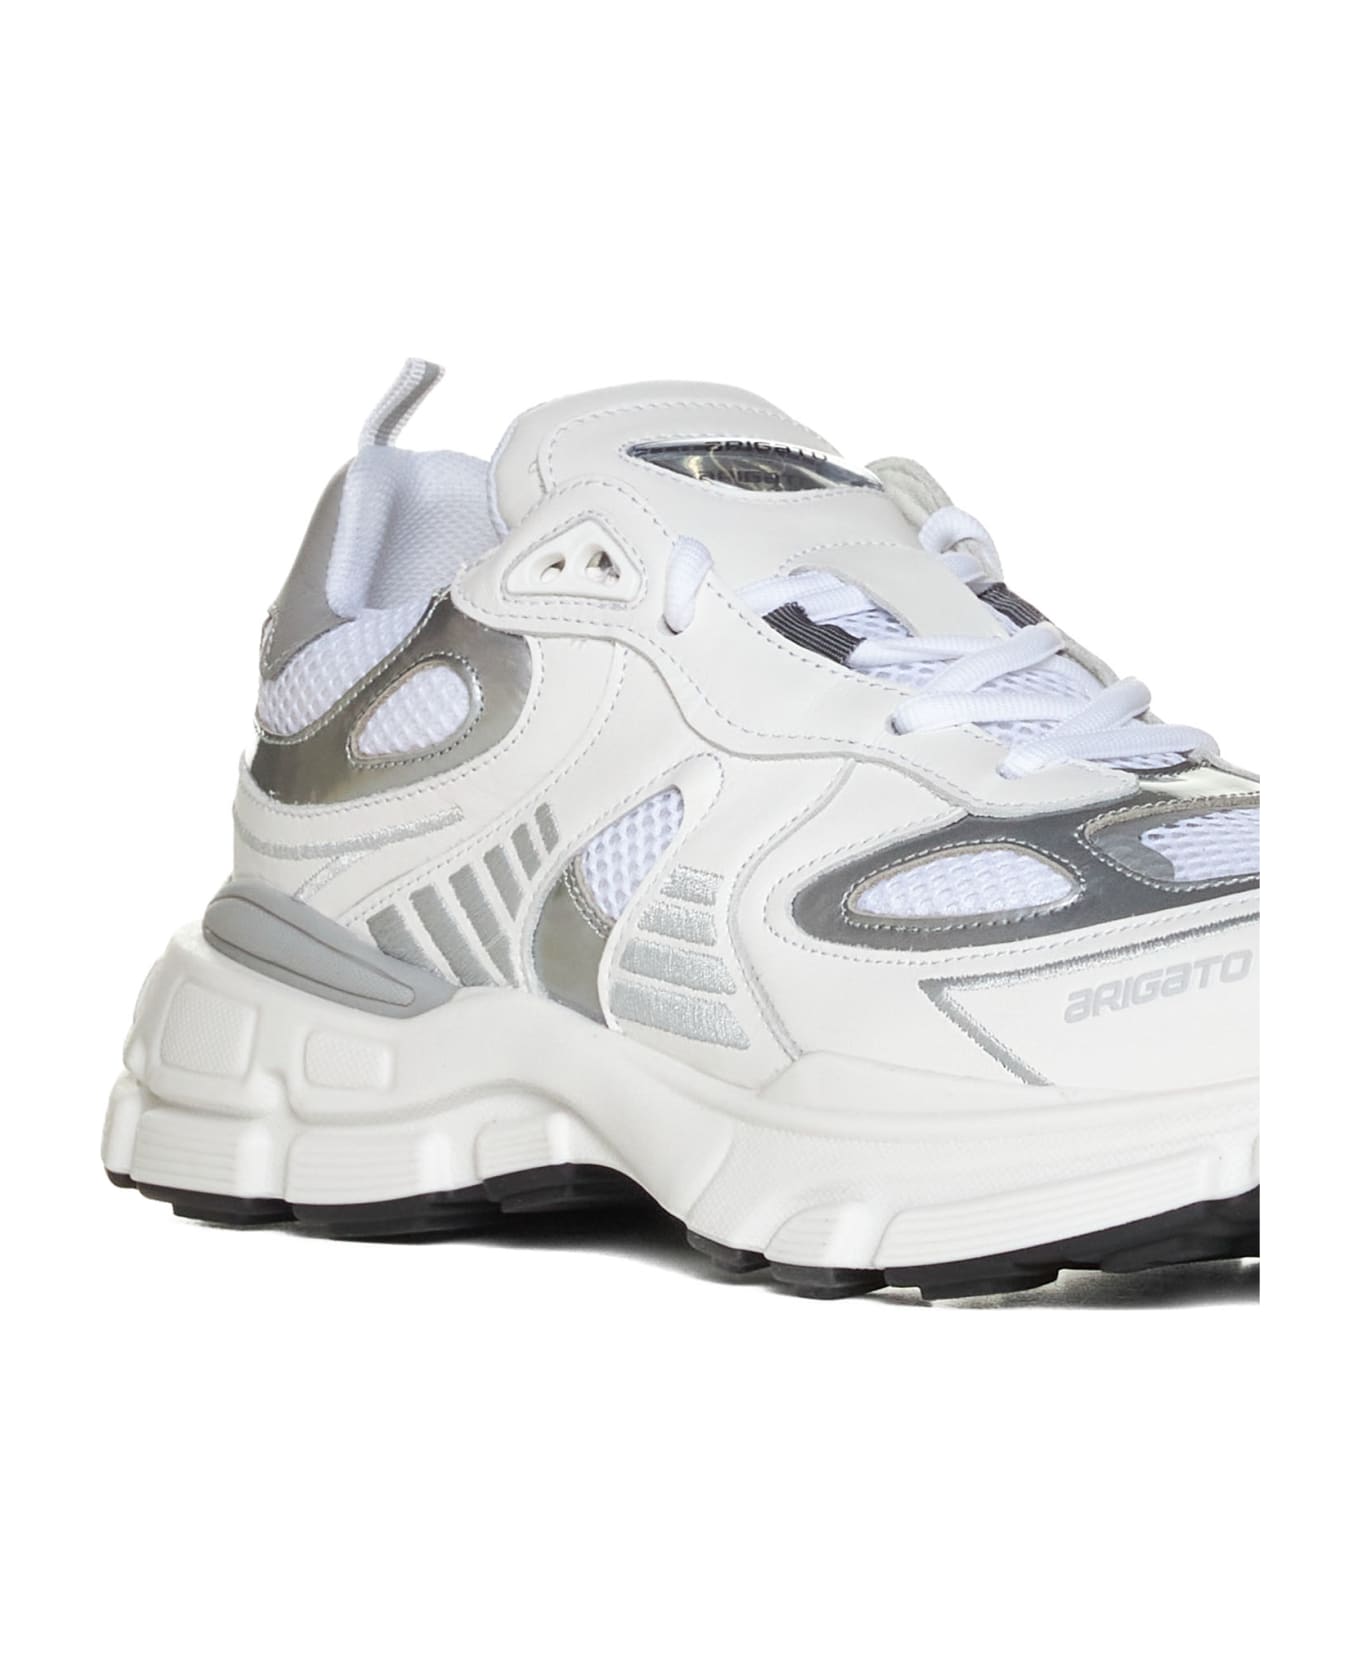 Axel Arigato Sneakers - White/silver